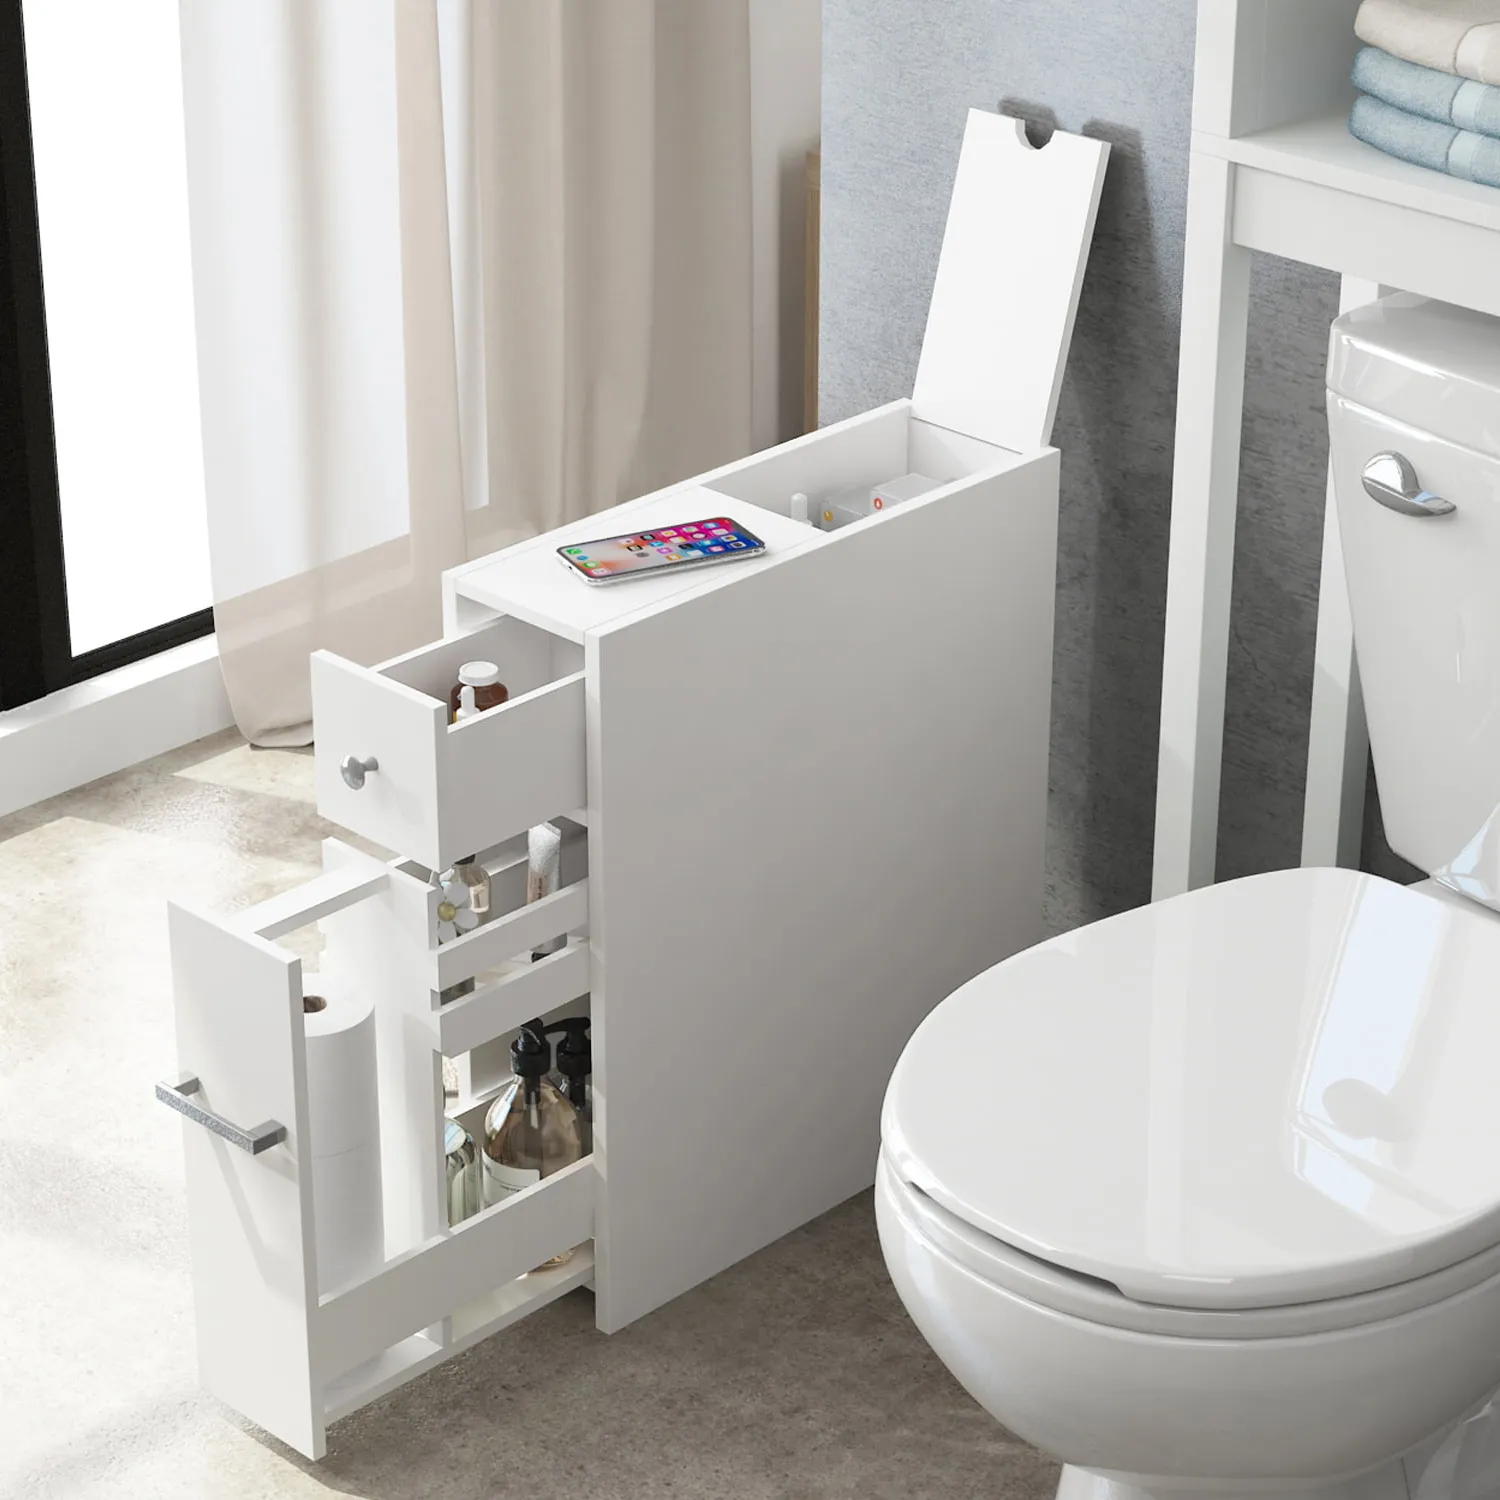 Sperrholz Bad Eitelkeit Holzplatte Badezimmers chränke und Eitelkeiten PVC Toiletten schrank Bad Dusch schrank Waschtisch möbel